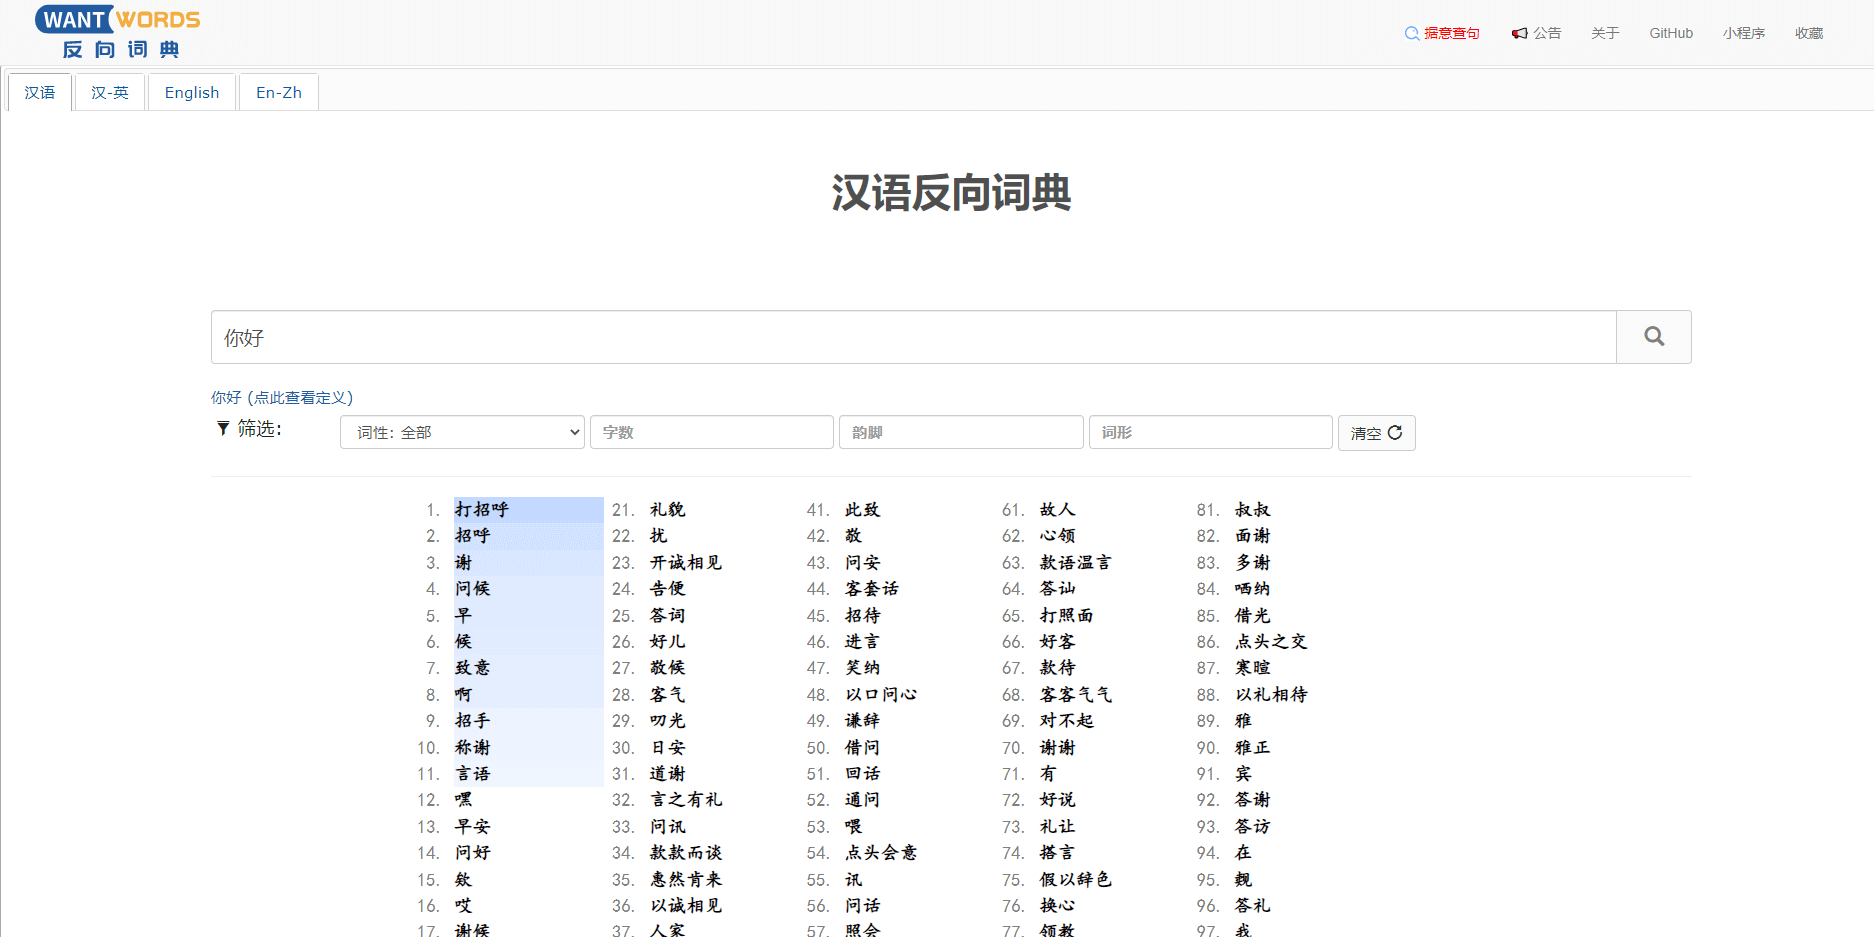 反向词典Wantwords - 支持中文及英语词典反向查询的AI文案工具